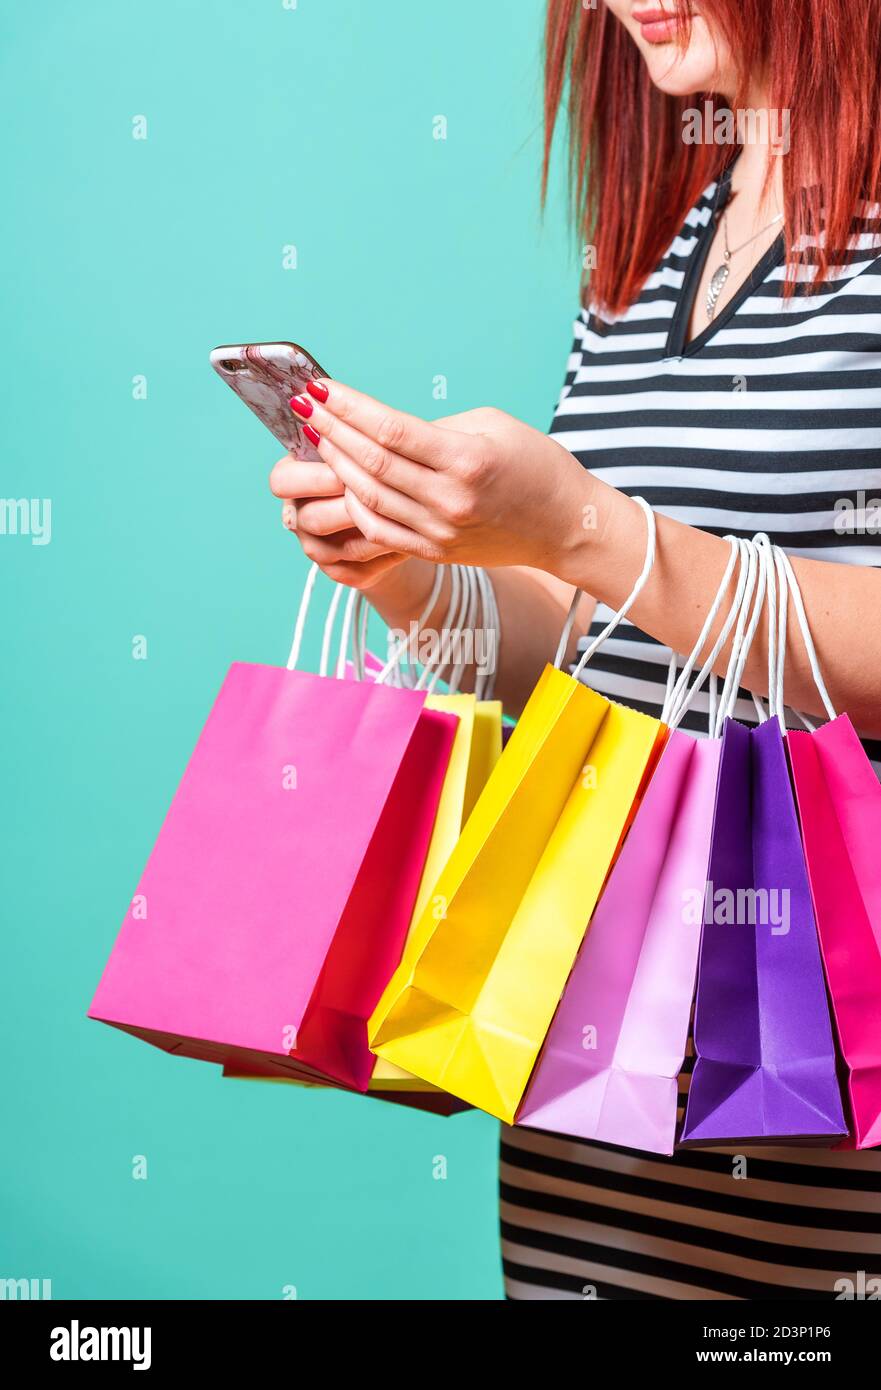 Frau, die Einkaufstaschen an den Händen hält und ein Smartphone benutzt. Nahaufnahme einer rothaarigen Frau, die mit bunten Papiertüten einkaufen. Stockfoto